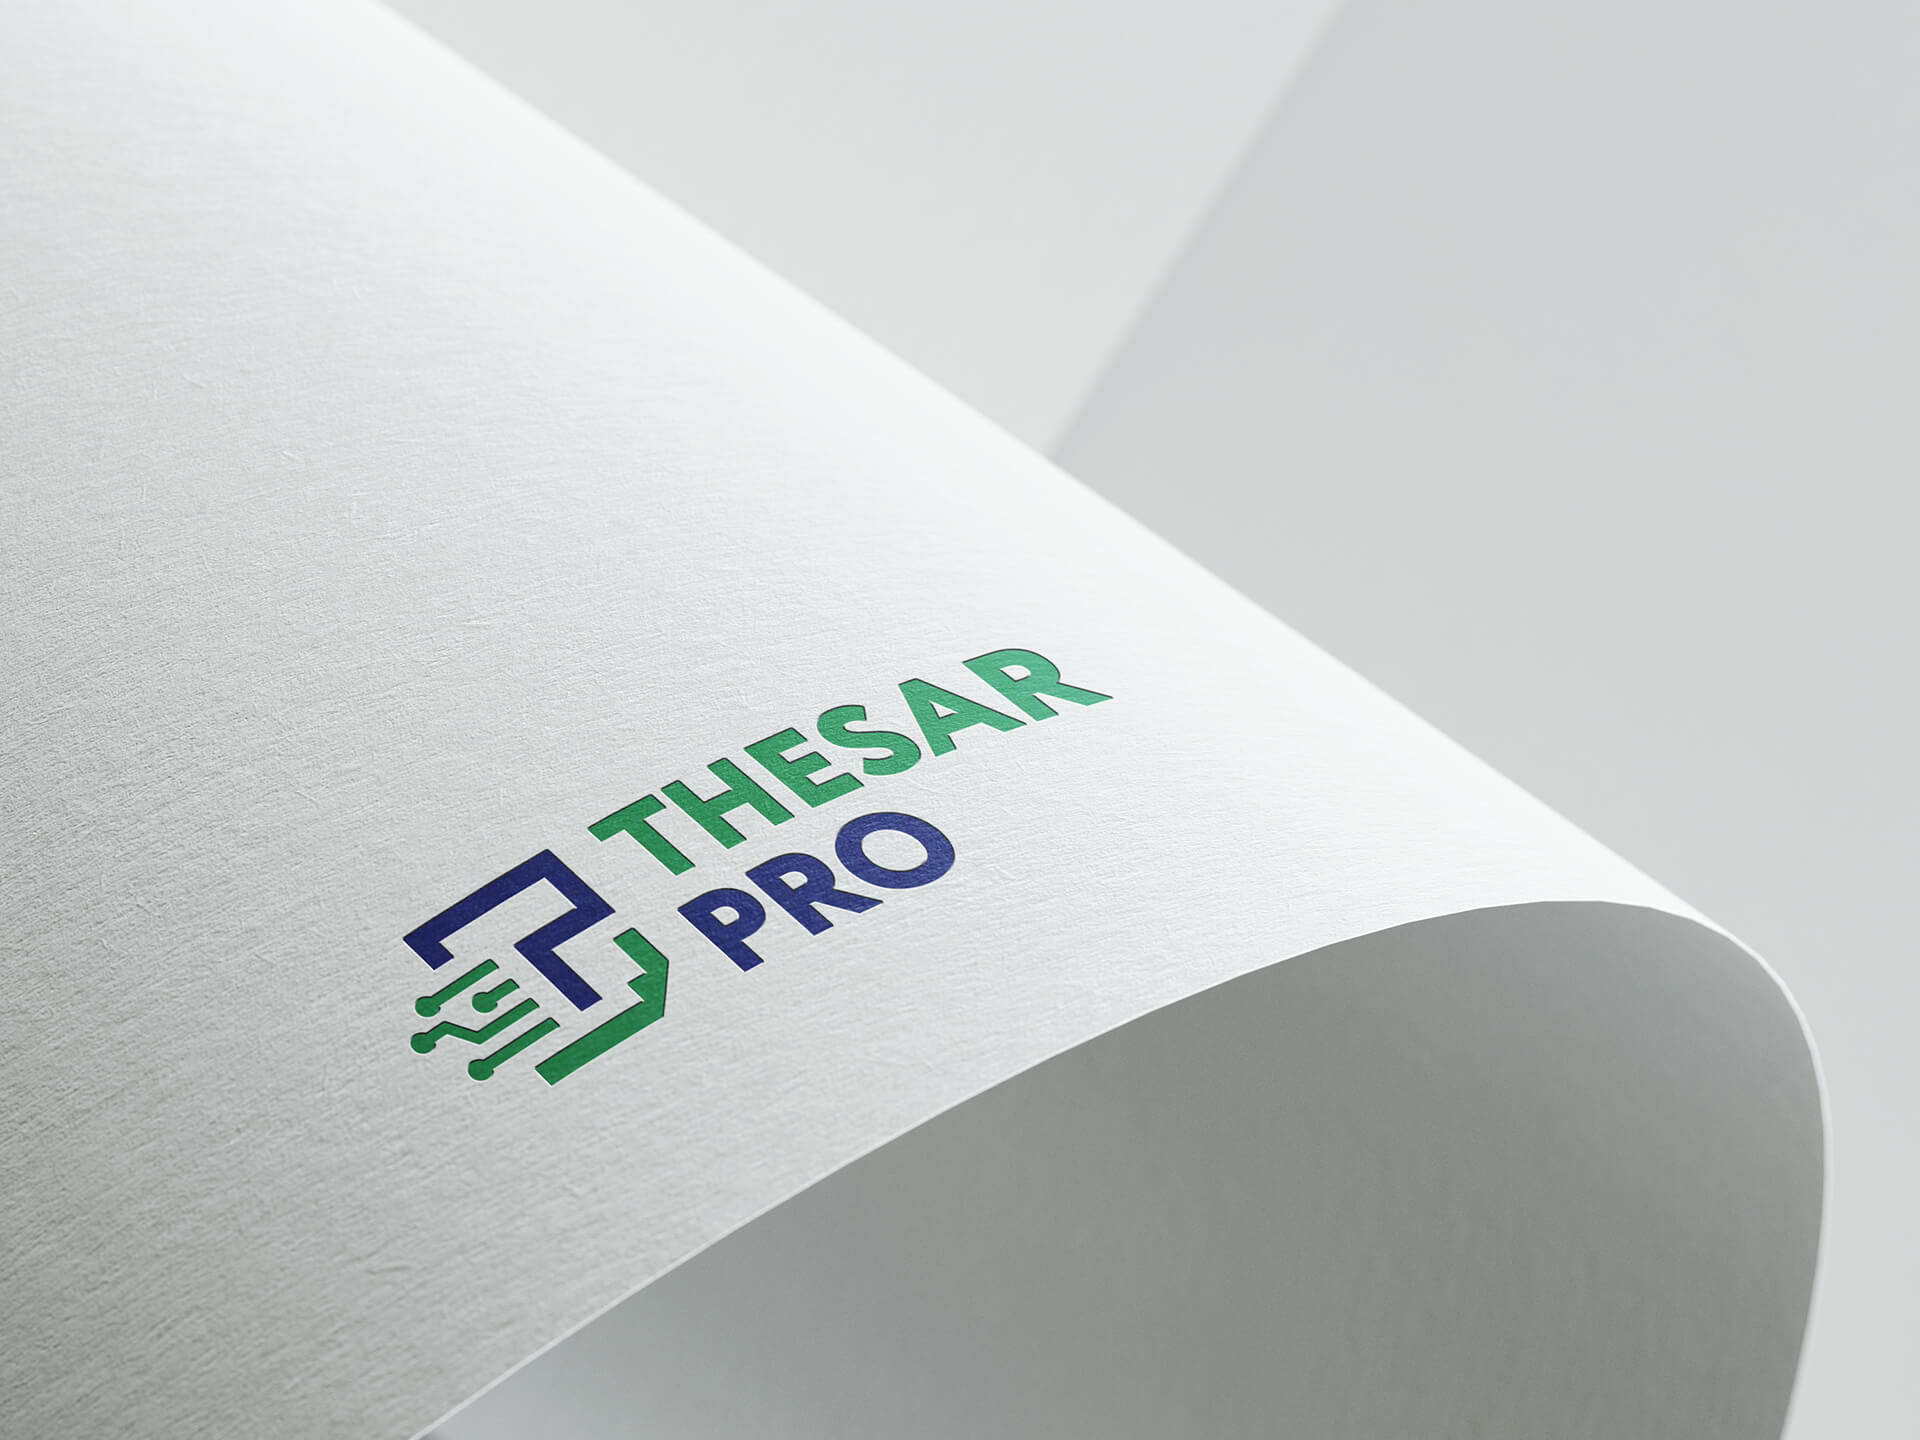 Logo, Thesar Pro, Agencja reklamy Prestige,